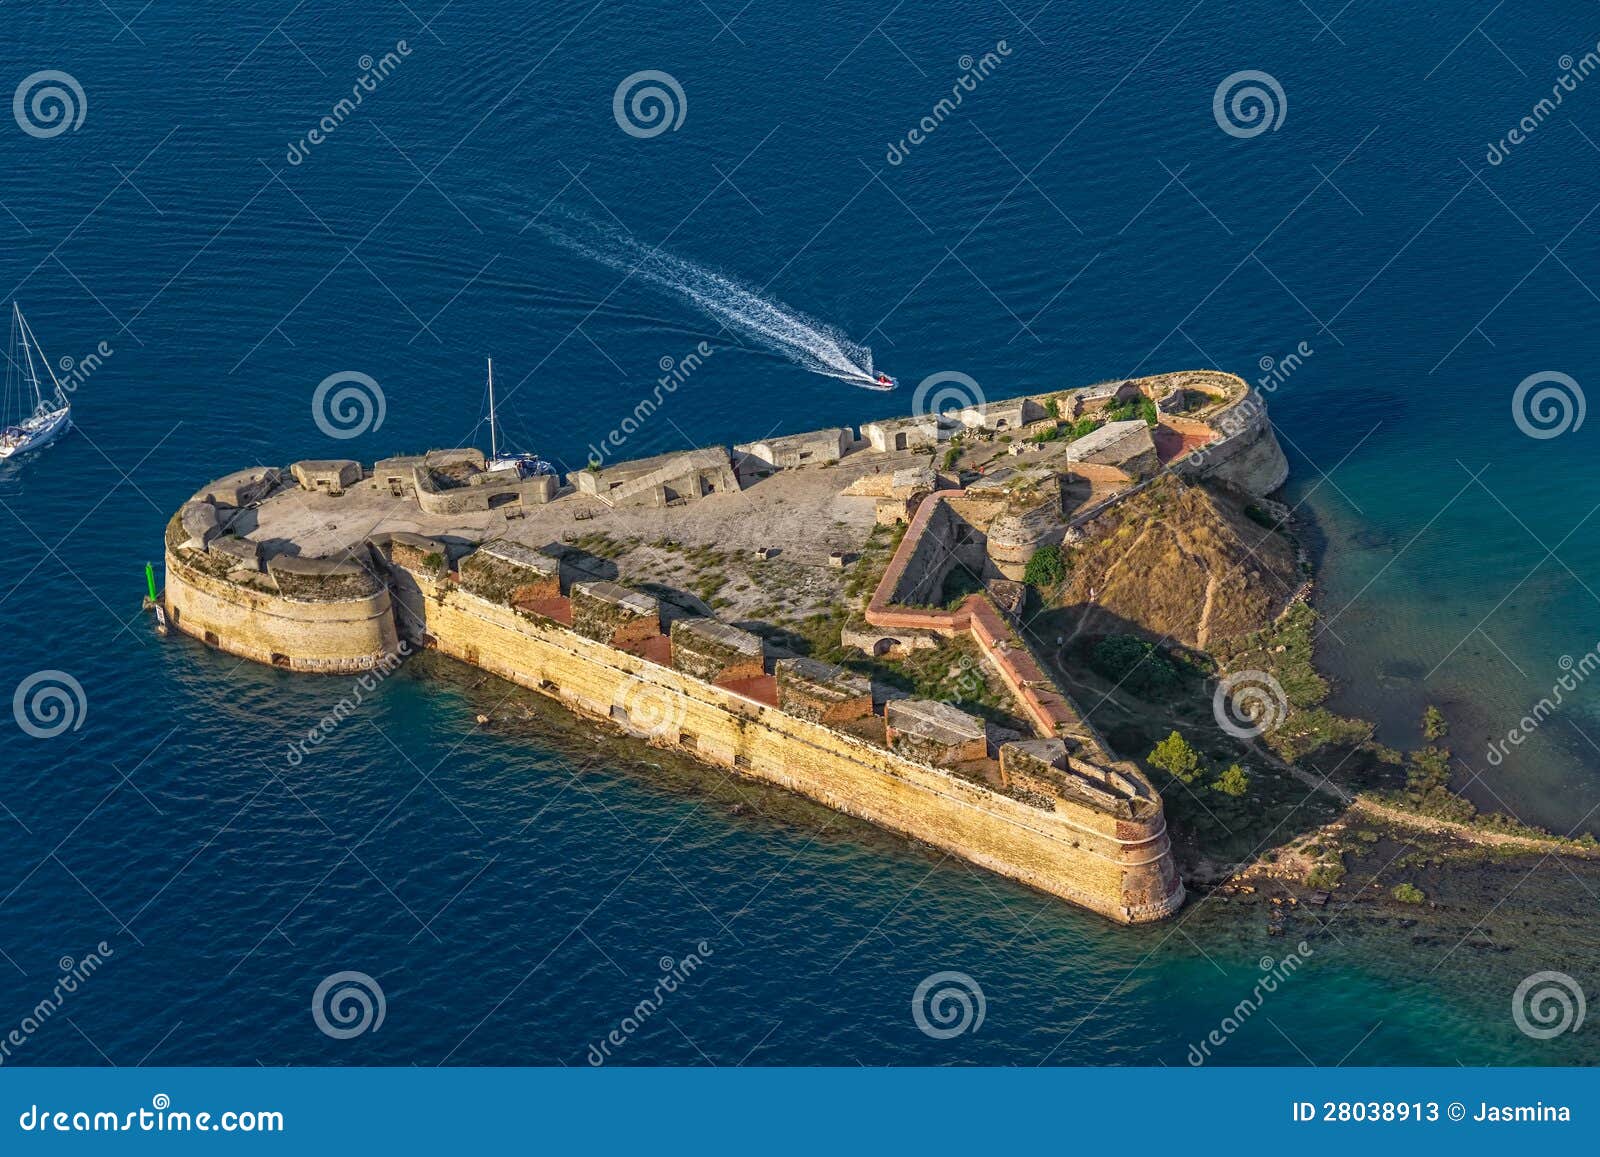 sibenik st. nicholas fortress